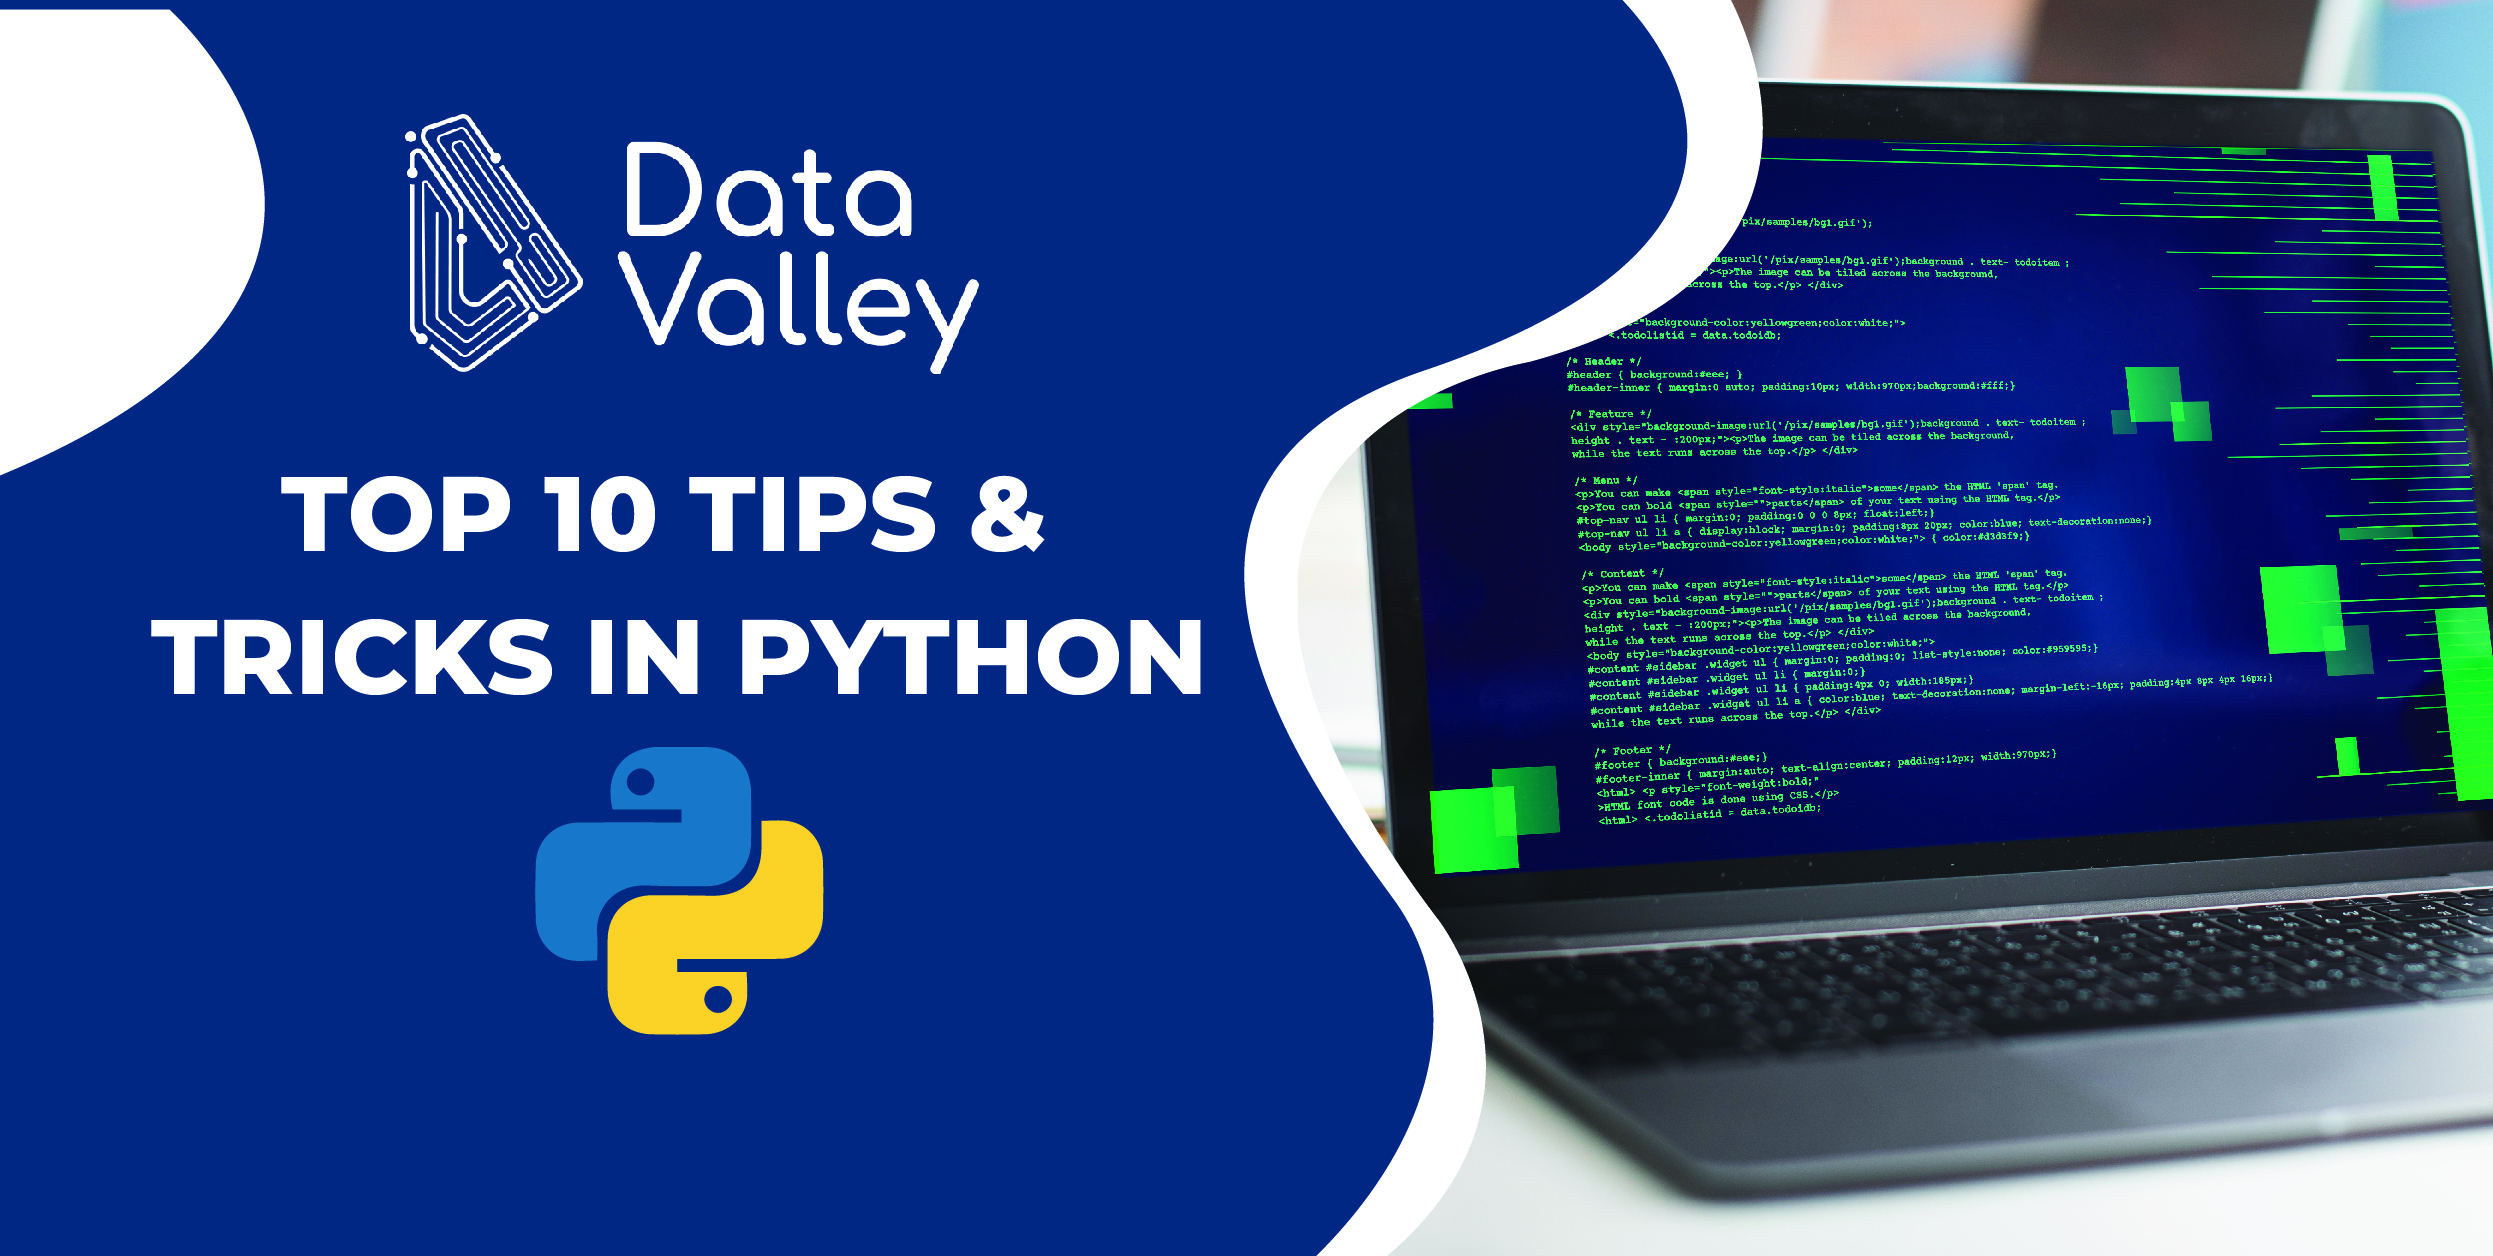 Mẹo và kỹ thuật Python: Bạn muốn trở thành một nhà lập trình Python thông minh và hiệu quả? Chúng tôi sẽ chia sẻ những mẹo và kỹ thuật hữu ích nhất để giúp bạn hoàn thiện kỹ năng lập trình của mình. Hãy xem hình ảnh của chúng tôi để tìm hiểu thêm nhé!